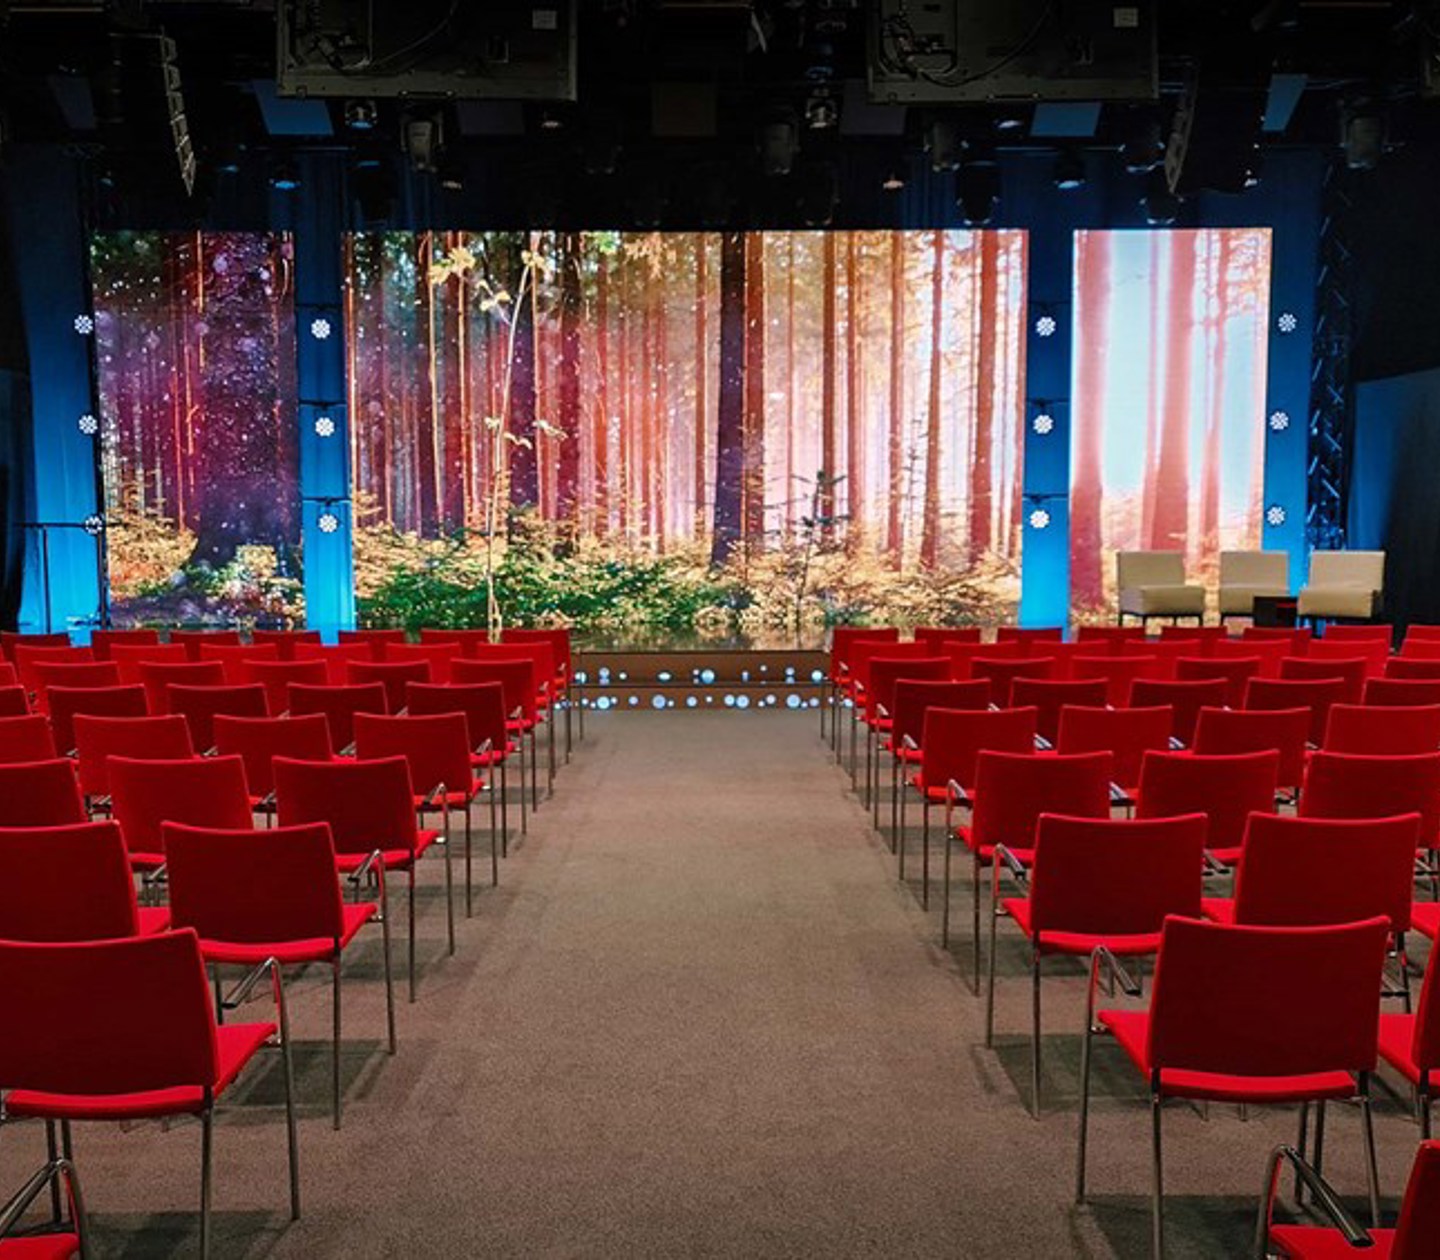 Konferenssal med biosittning, röda stolar, tv-studio, projektor